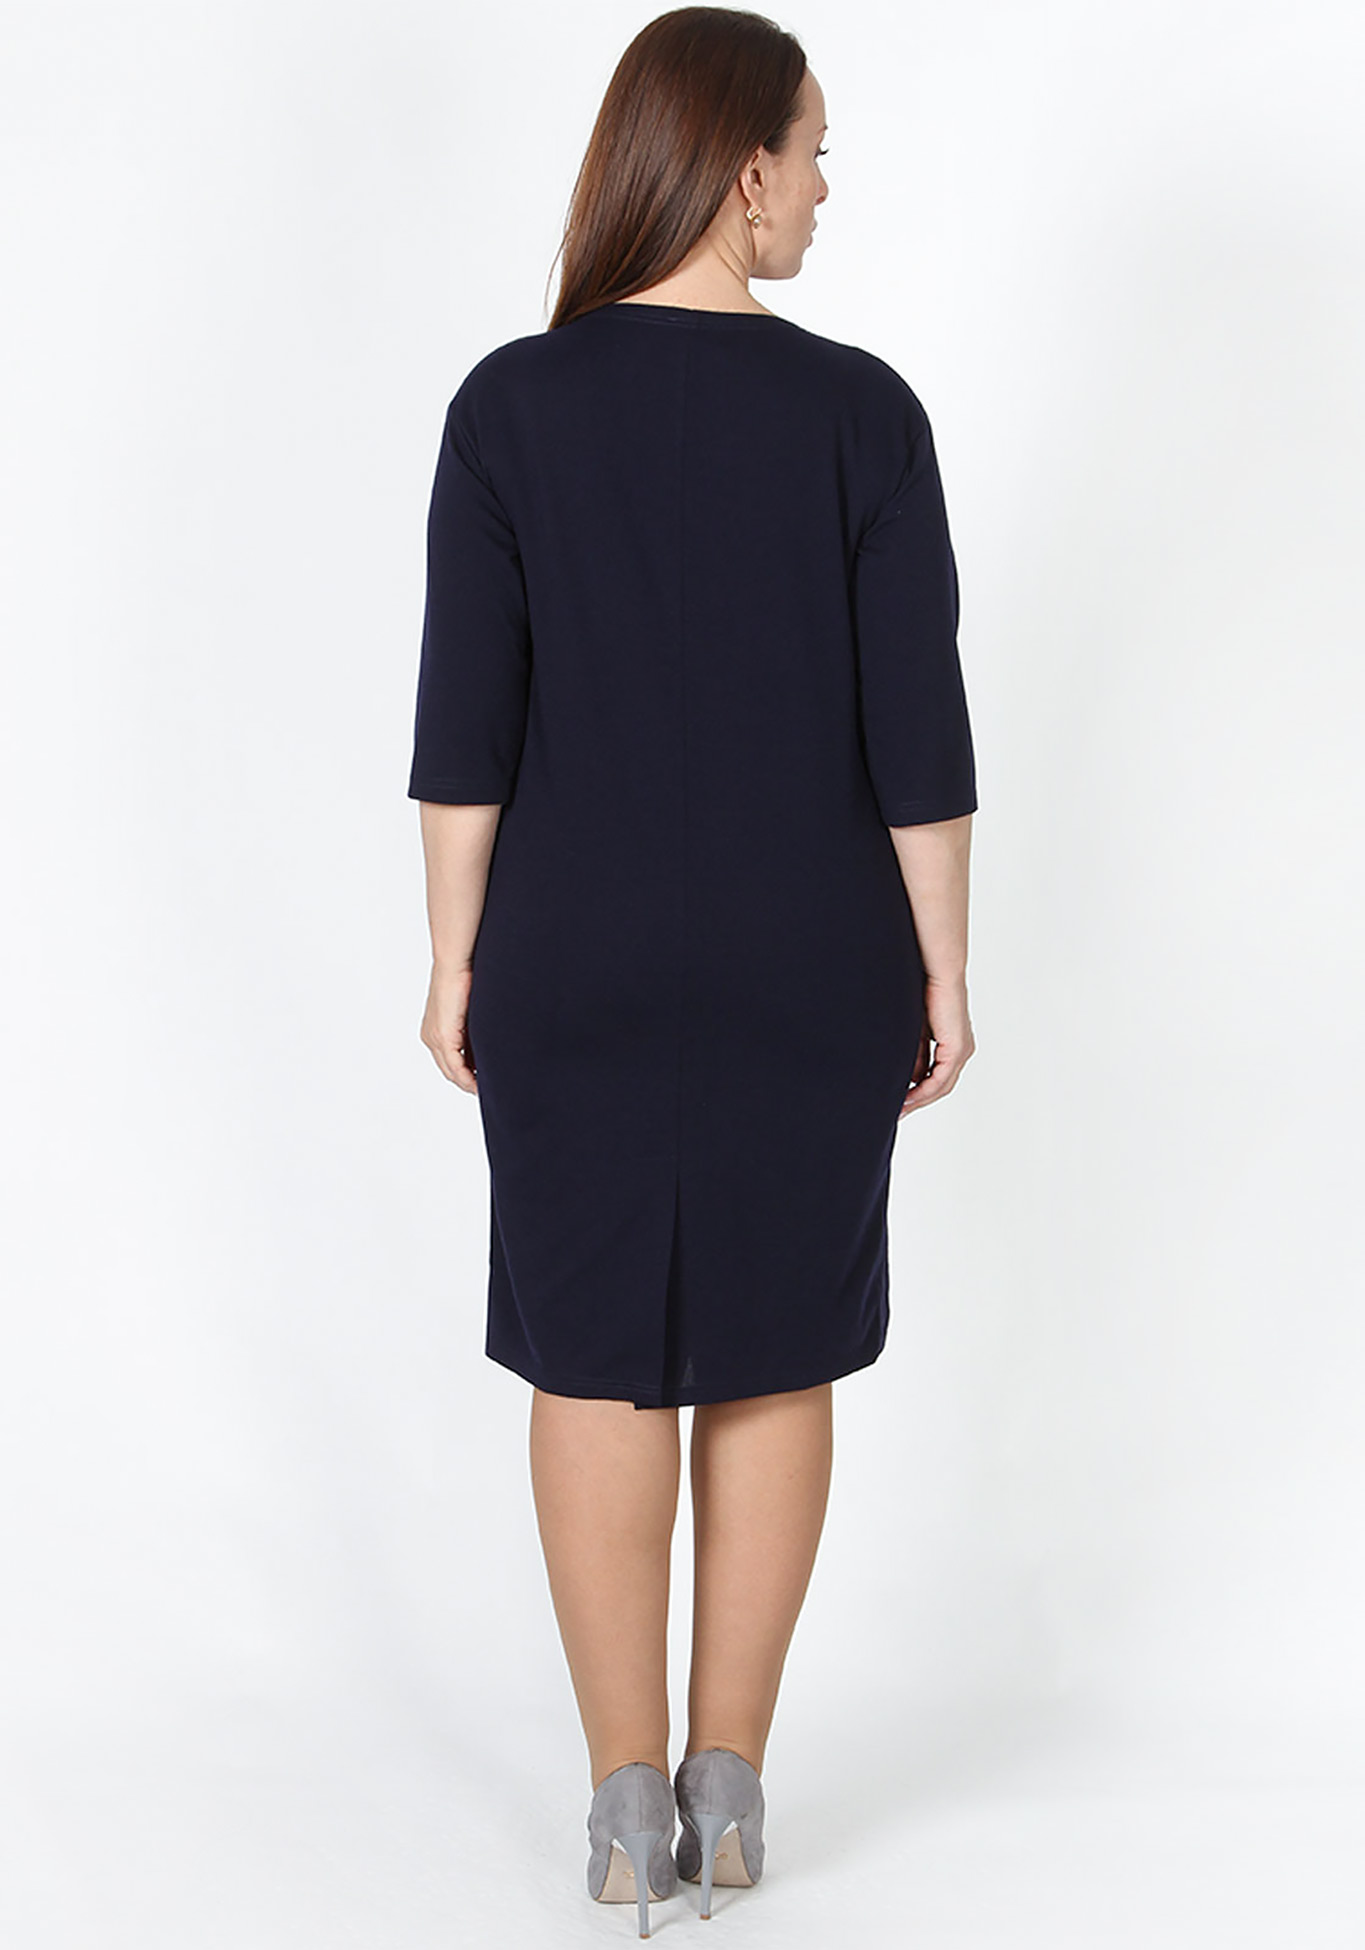 Платье «Триана» Veas, размер 48, цвет черный прямая модель - фото 4